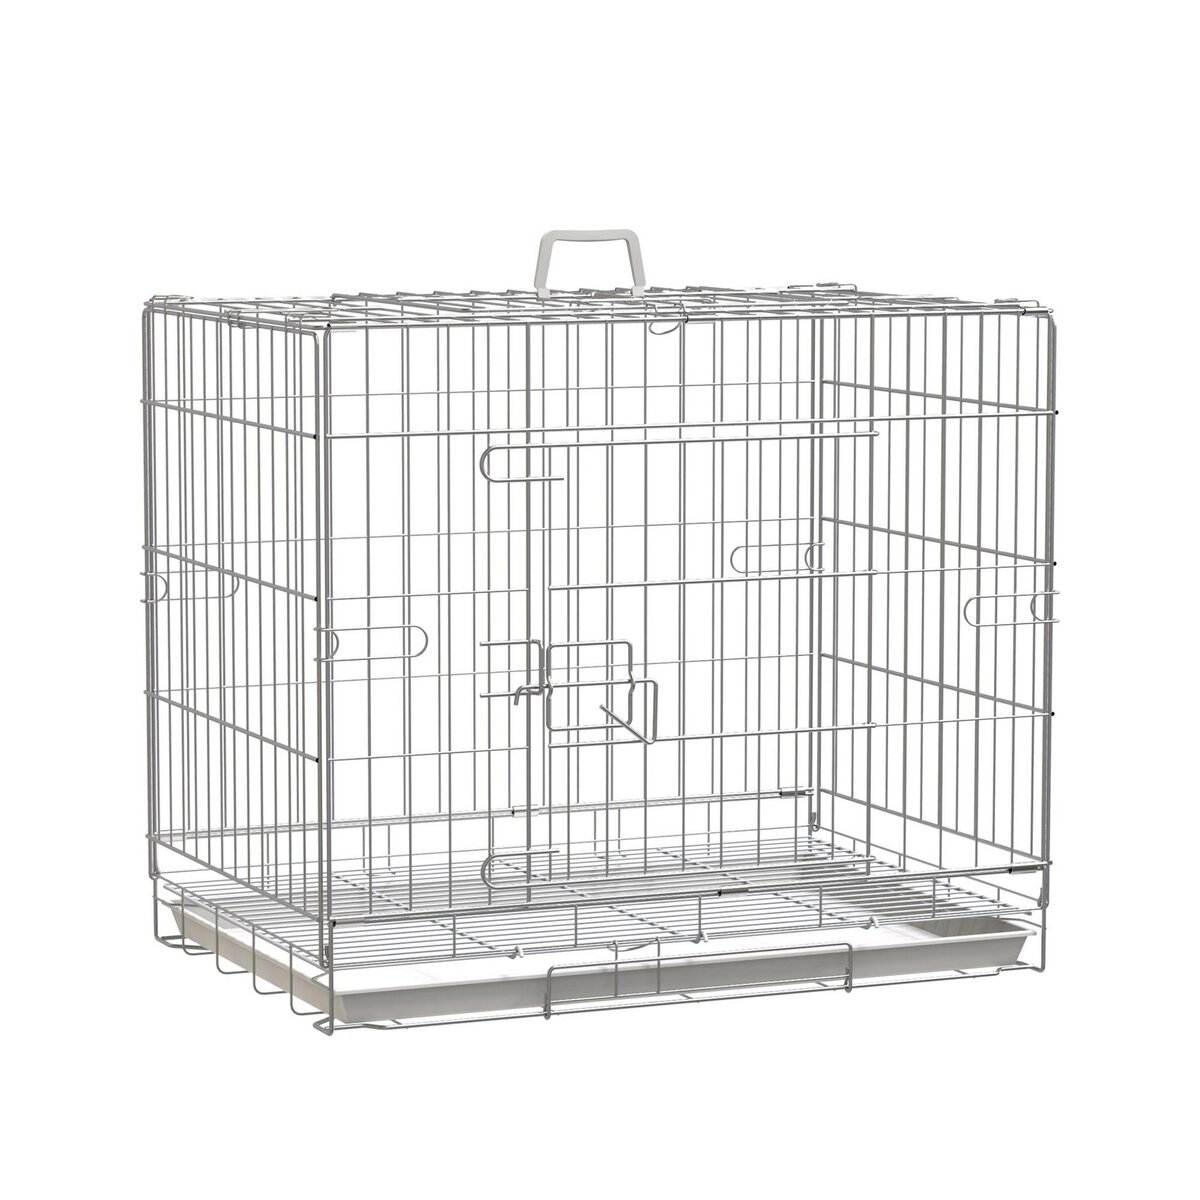 Cage pour chien animaux cage en bois MDF classe E1 3 portes verrouillables